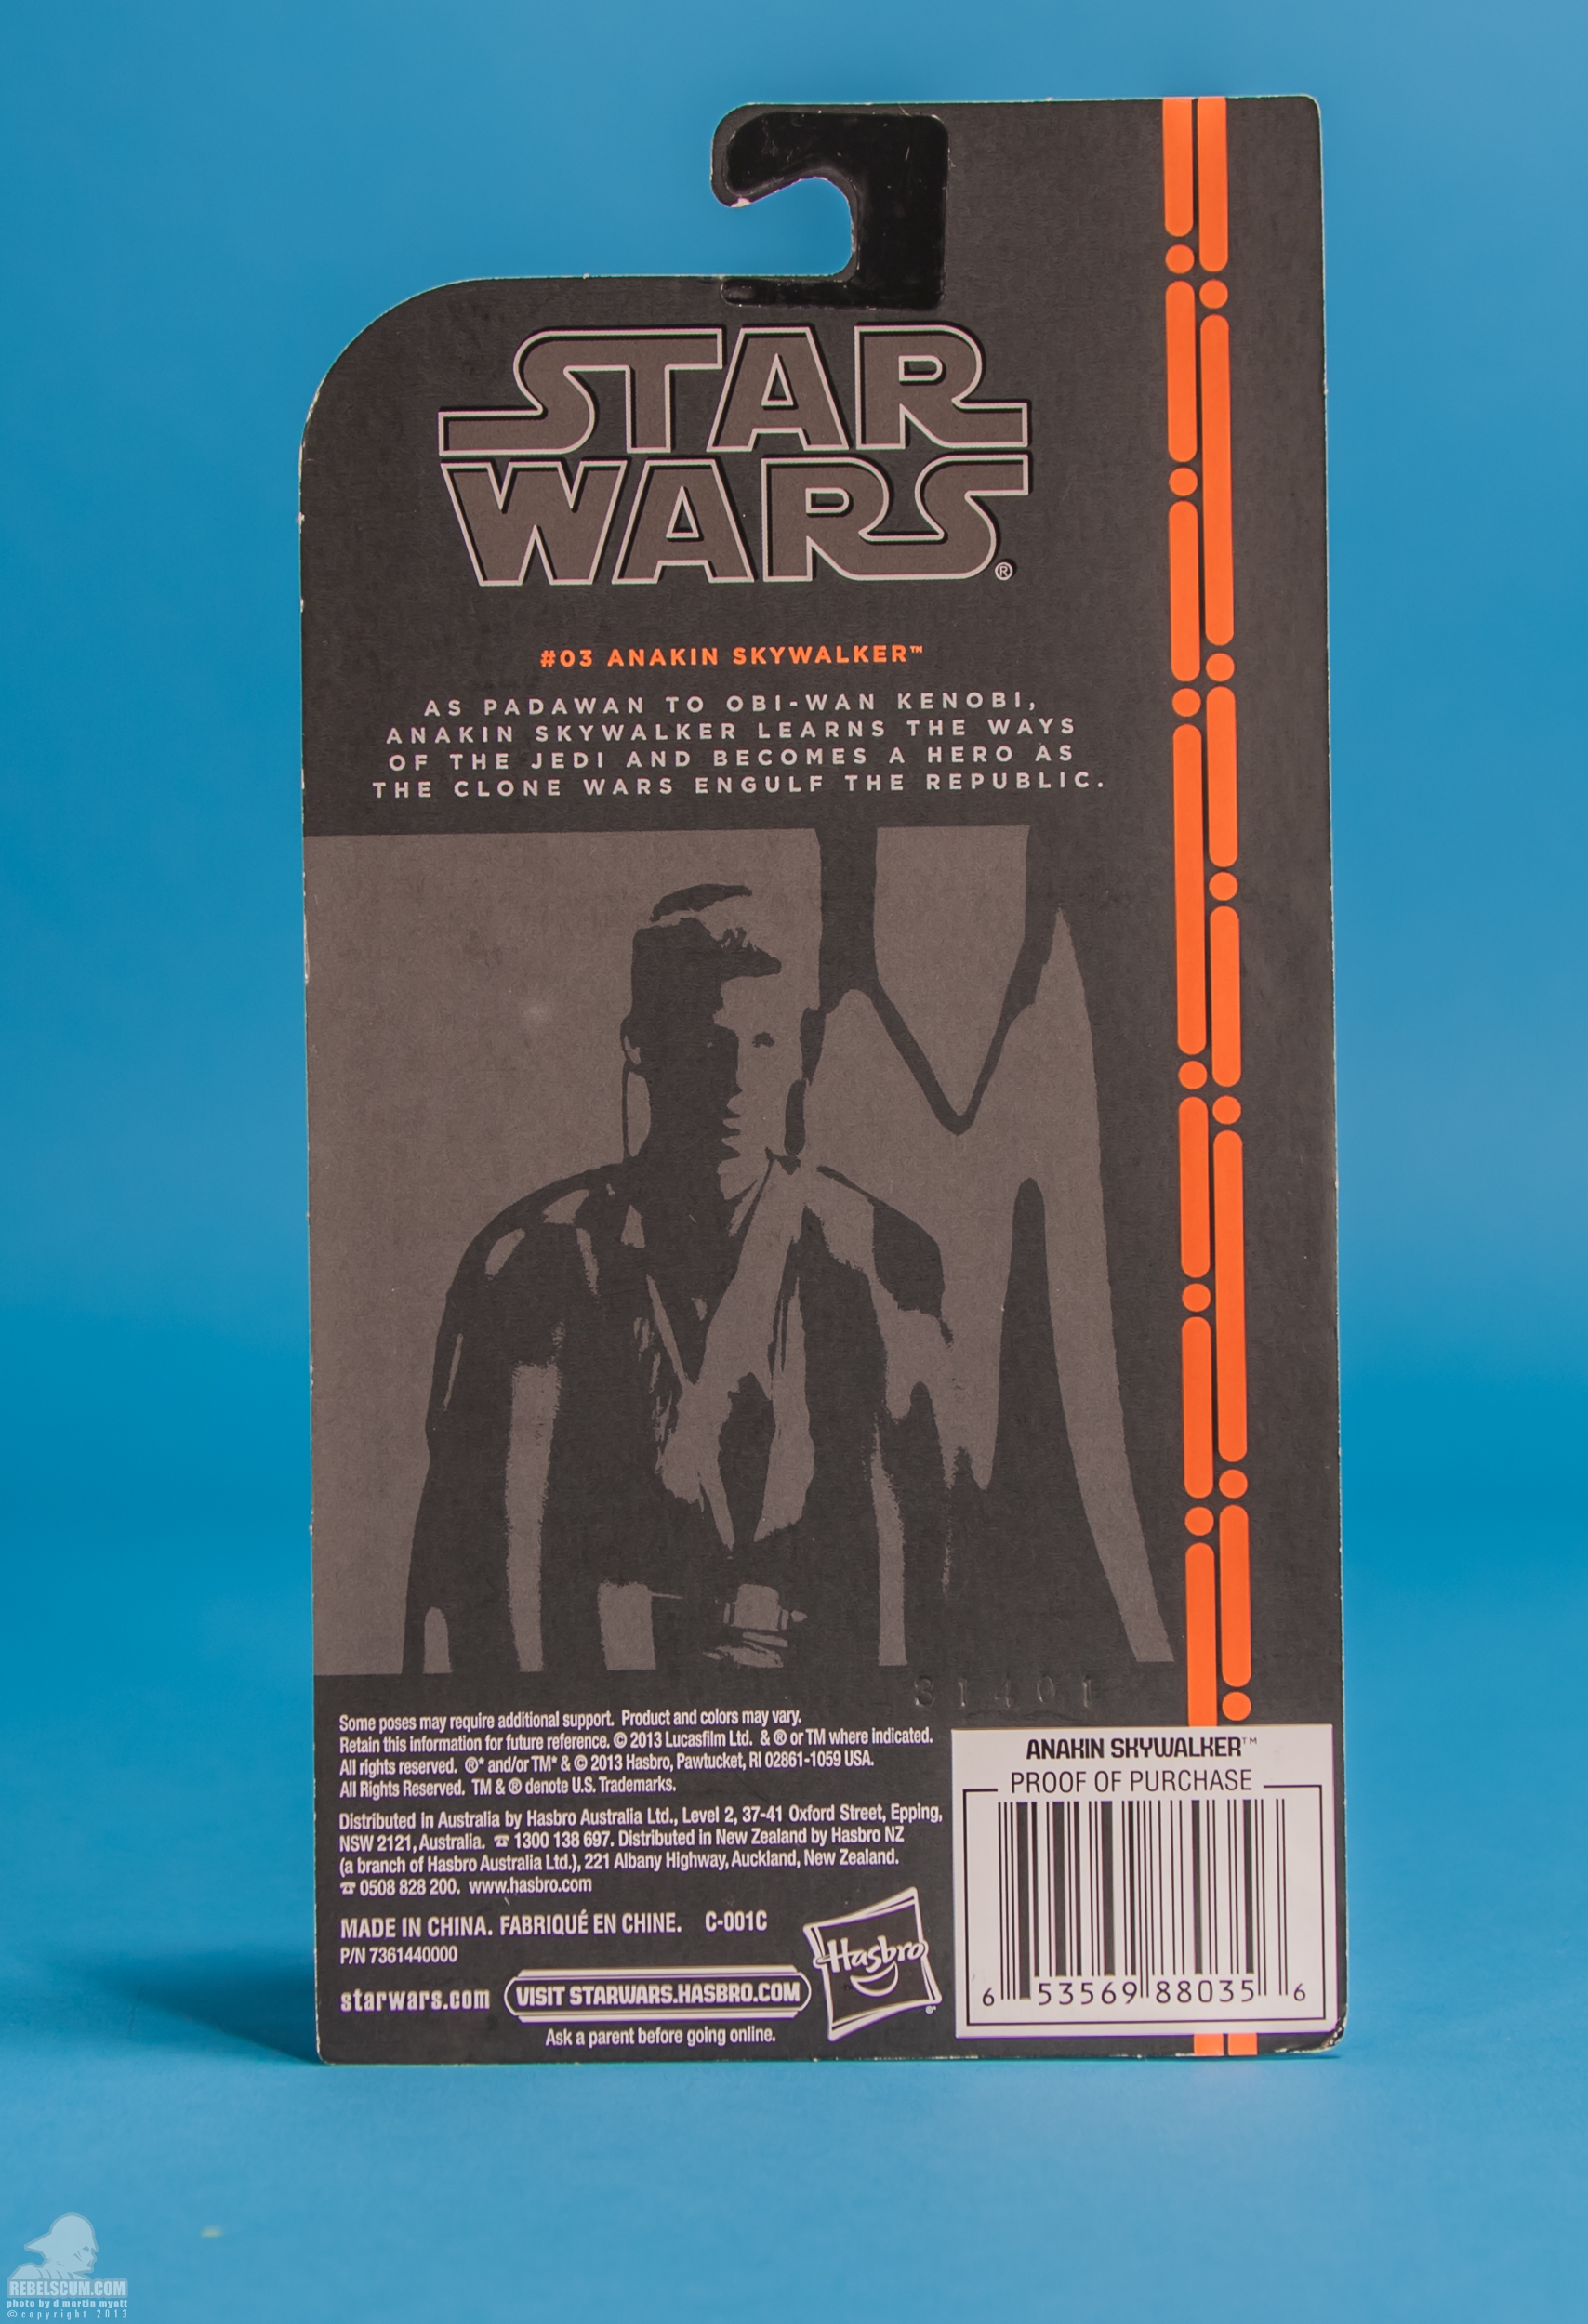 The-Black-Series-Star-Wars-Hasbro-03-Anakin-Skywalker-025.jpg